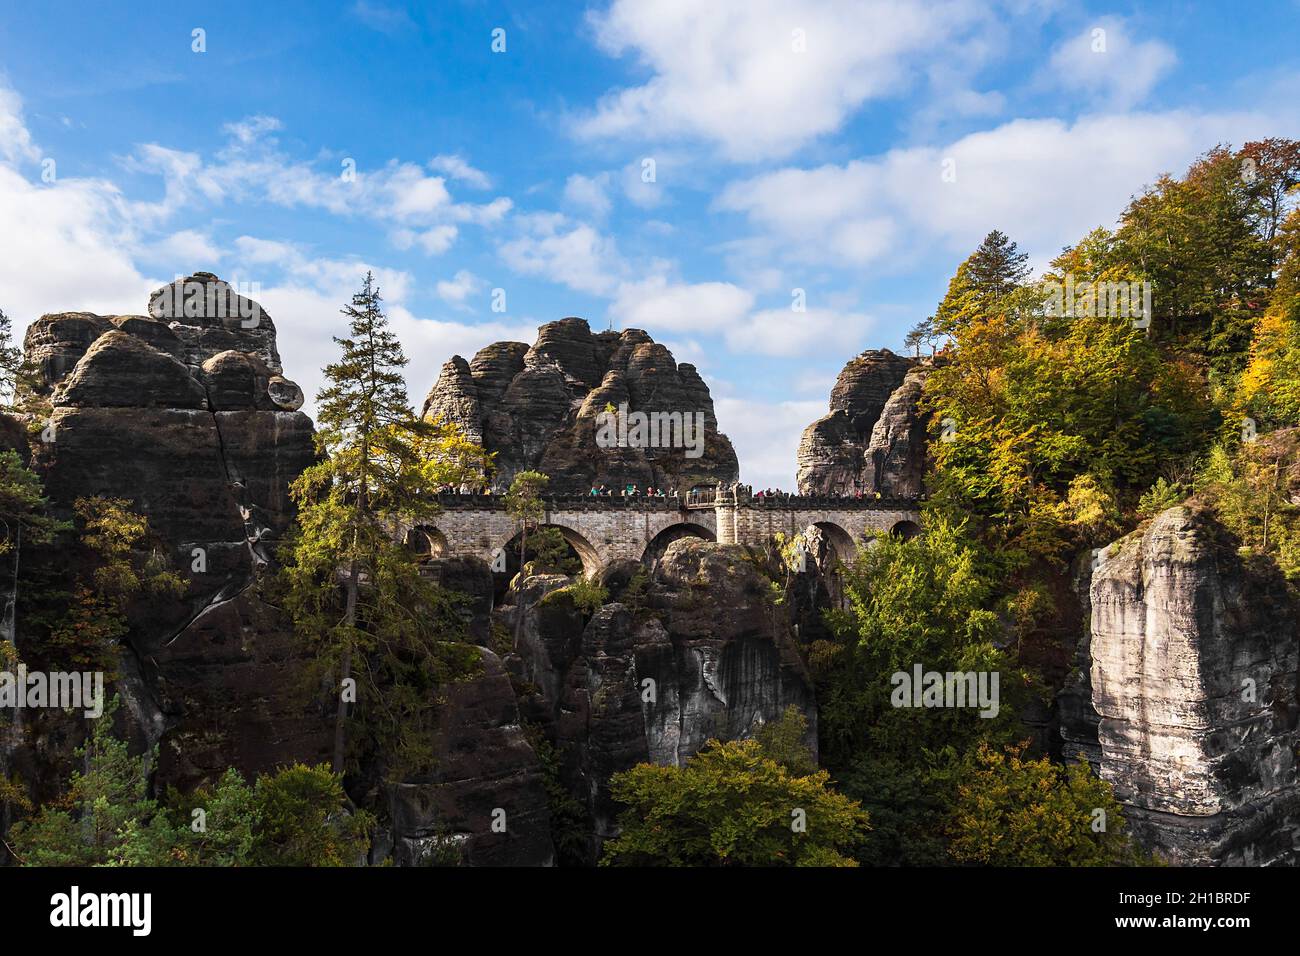 Blick auf Felsen und Bäume und die Bastion-Brücke im sächsischen Sandsteingebirge, Deutschland. Stockfoto